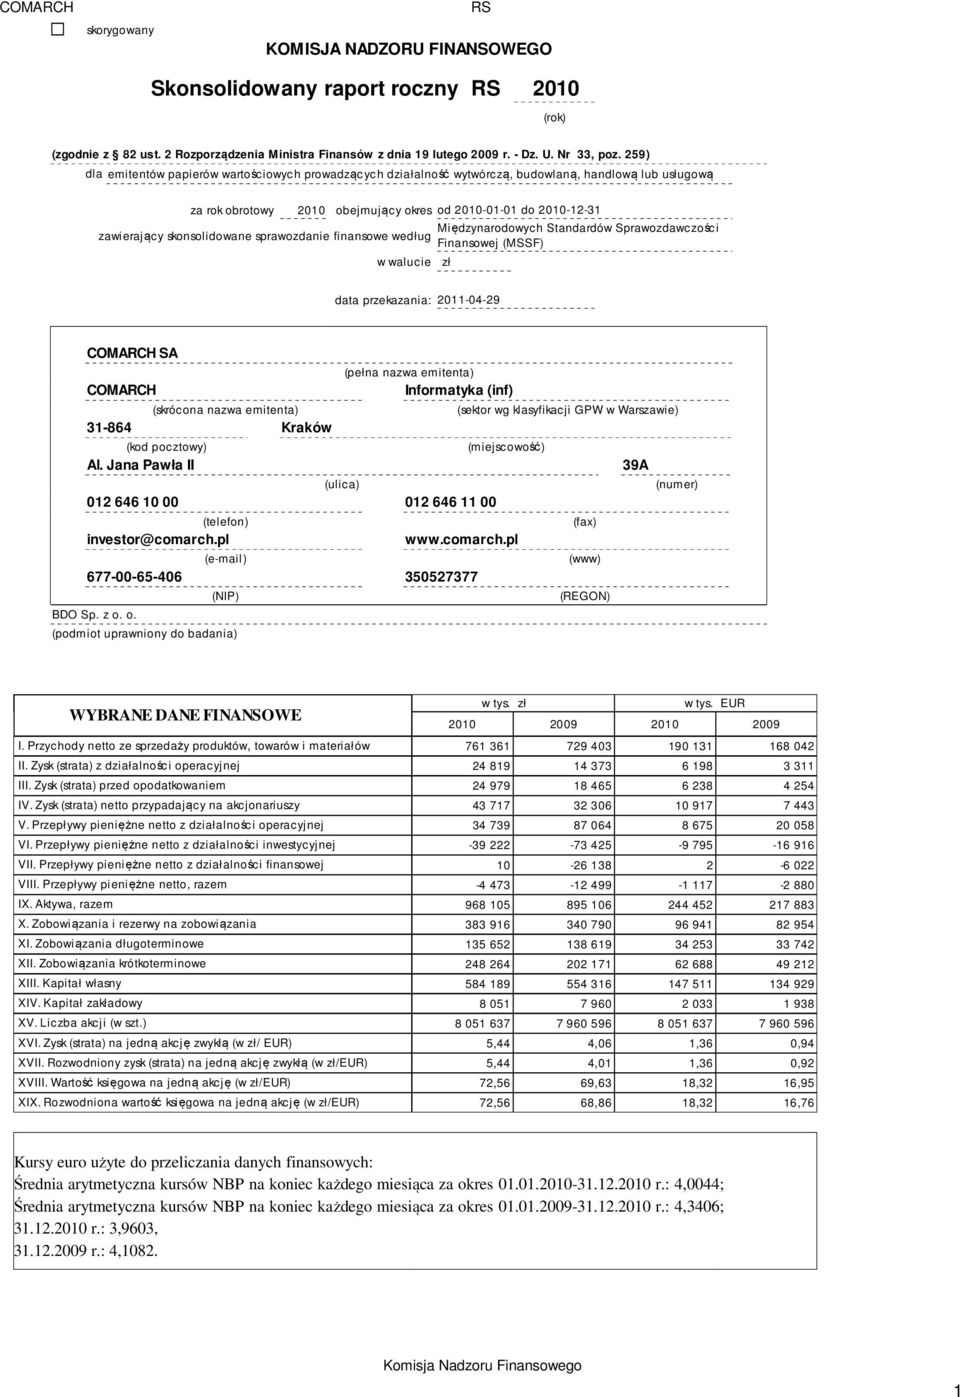 skonsolidowane sprawozdanie finansowe według w walucie zł Międzynarodowych Standardów Sprawozdawczości Finansowej (MSSF) data przekazania: 2011-04-29 COMARCH SA (pełna nazwa emitenta) COMARCH